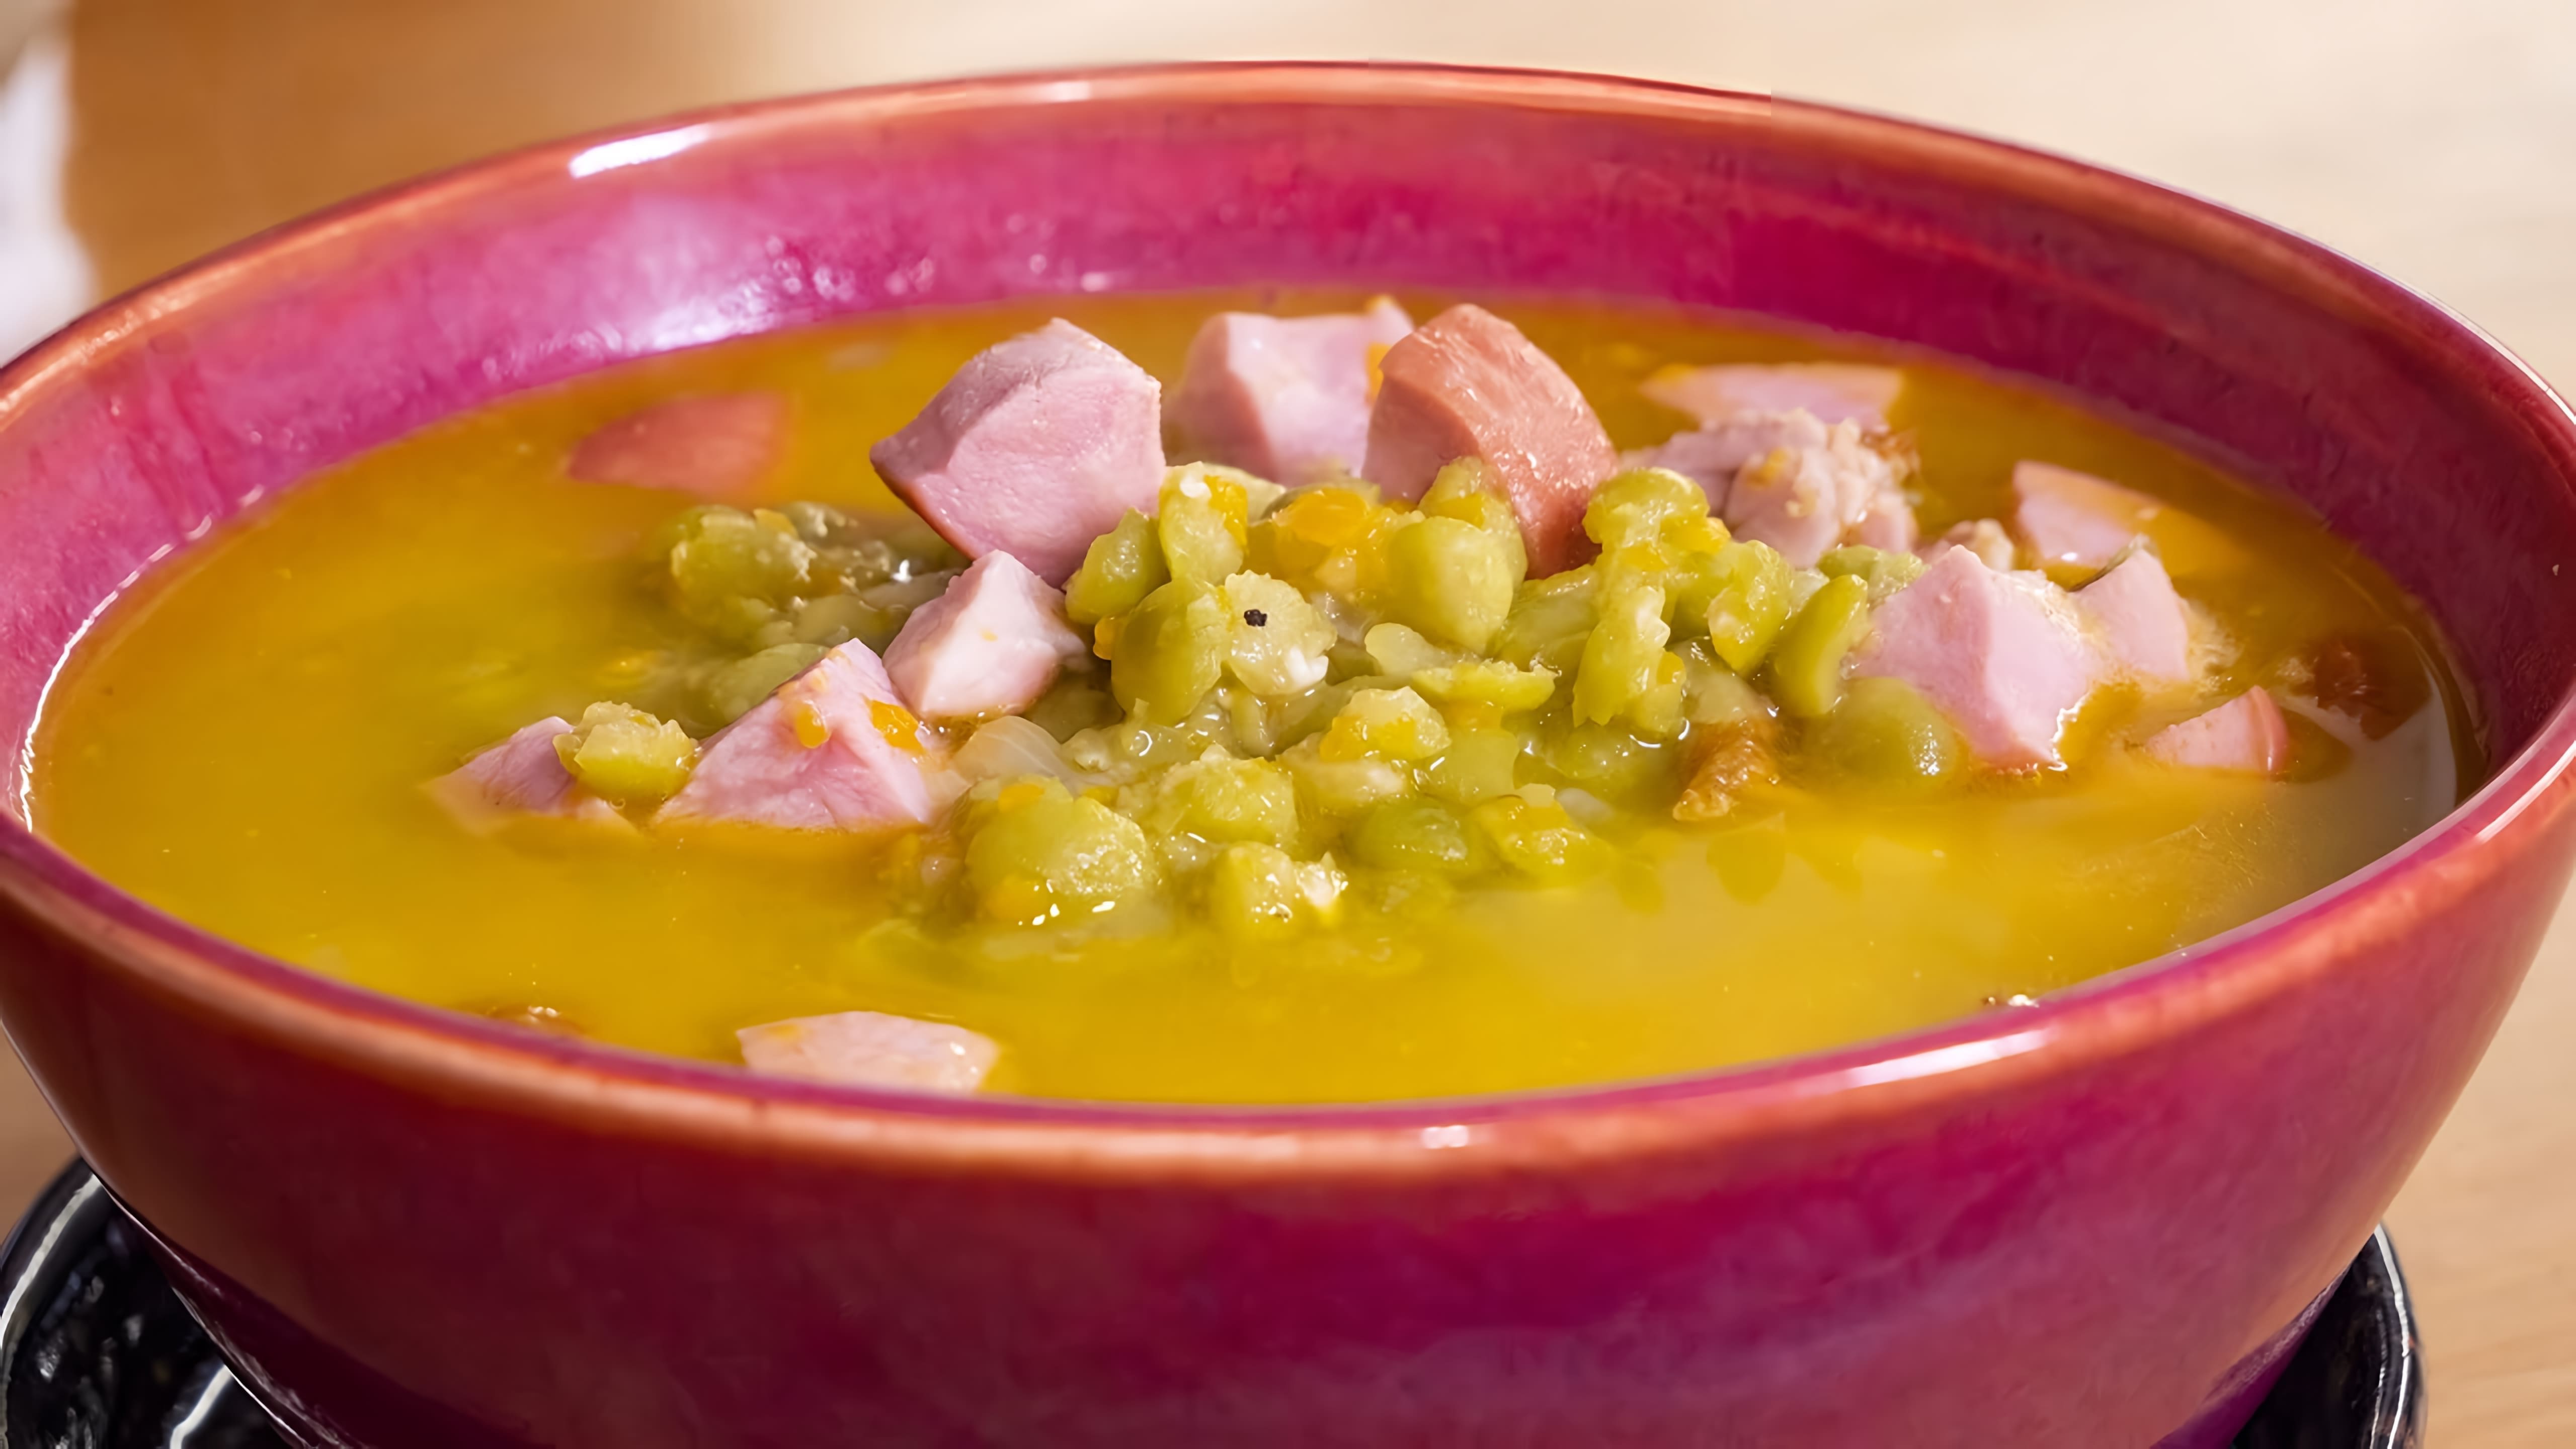 Видео посвящено приготовлению горохового супа с колбасой и копчеными мясными изделиями